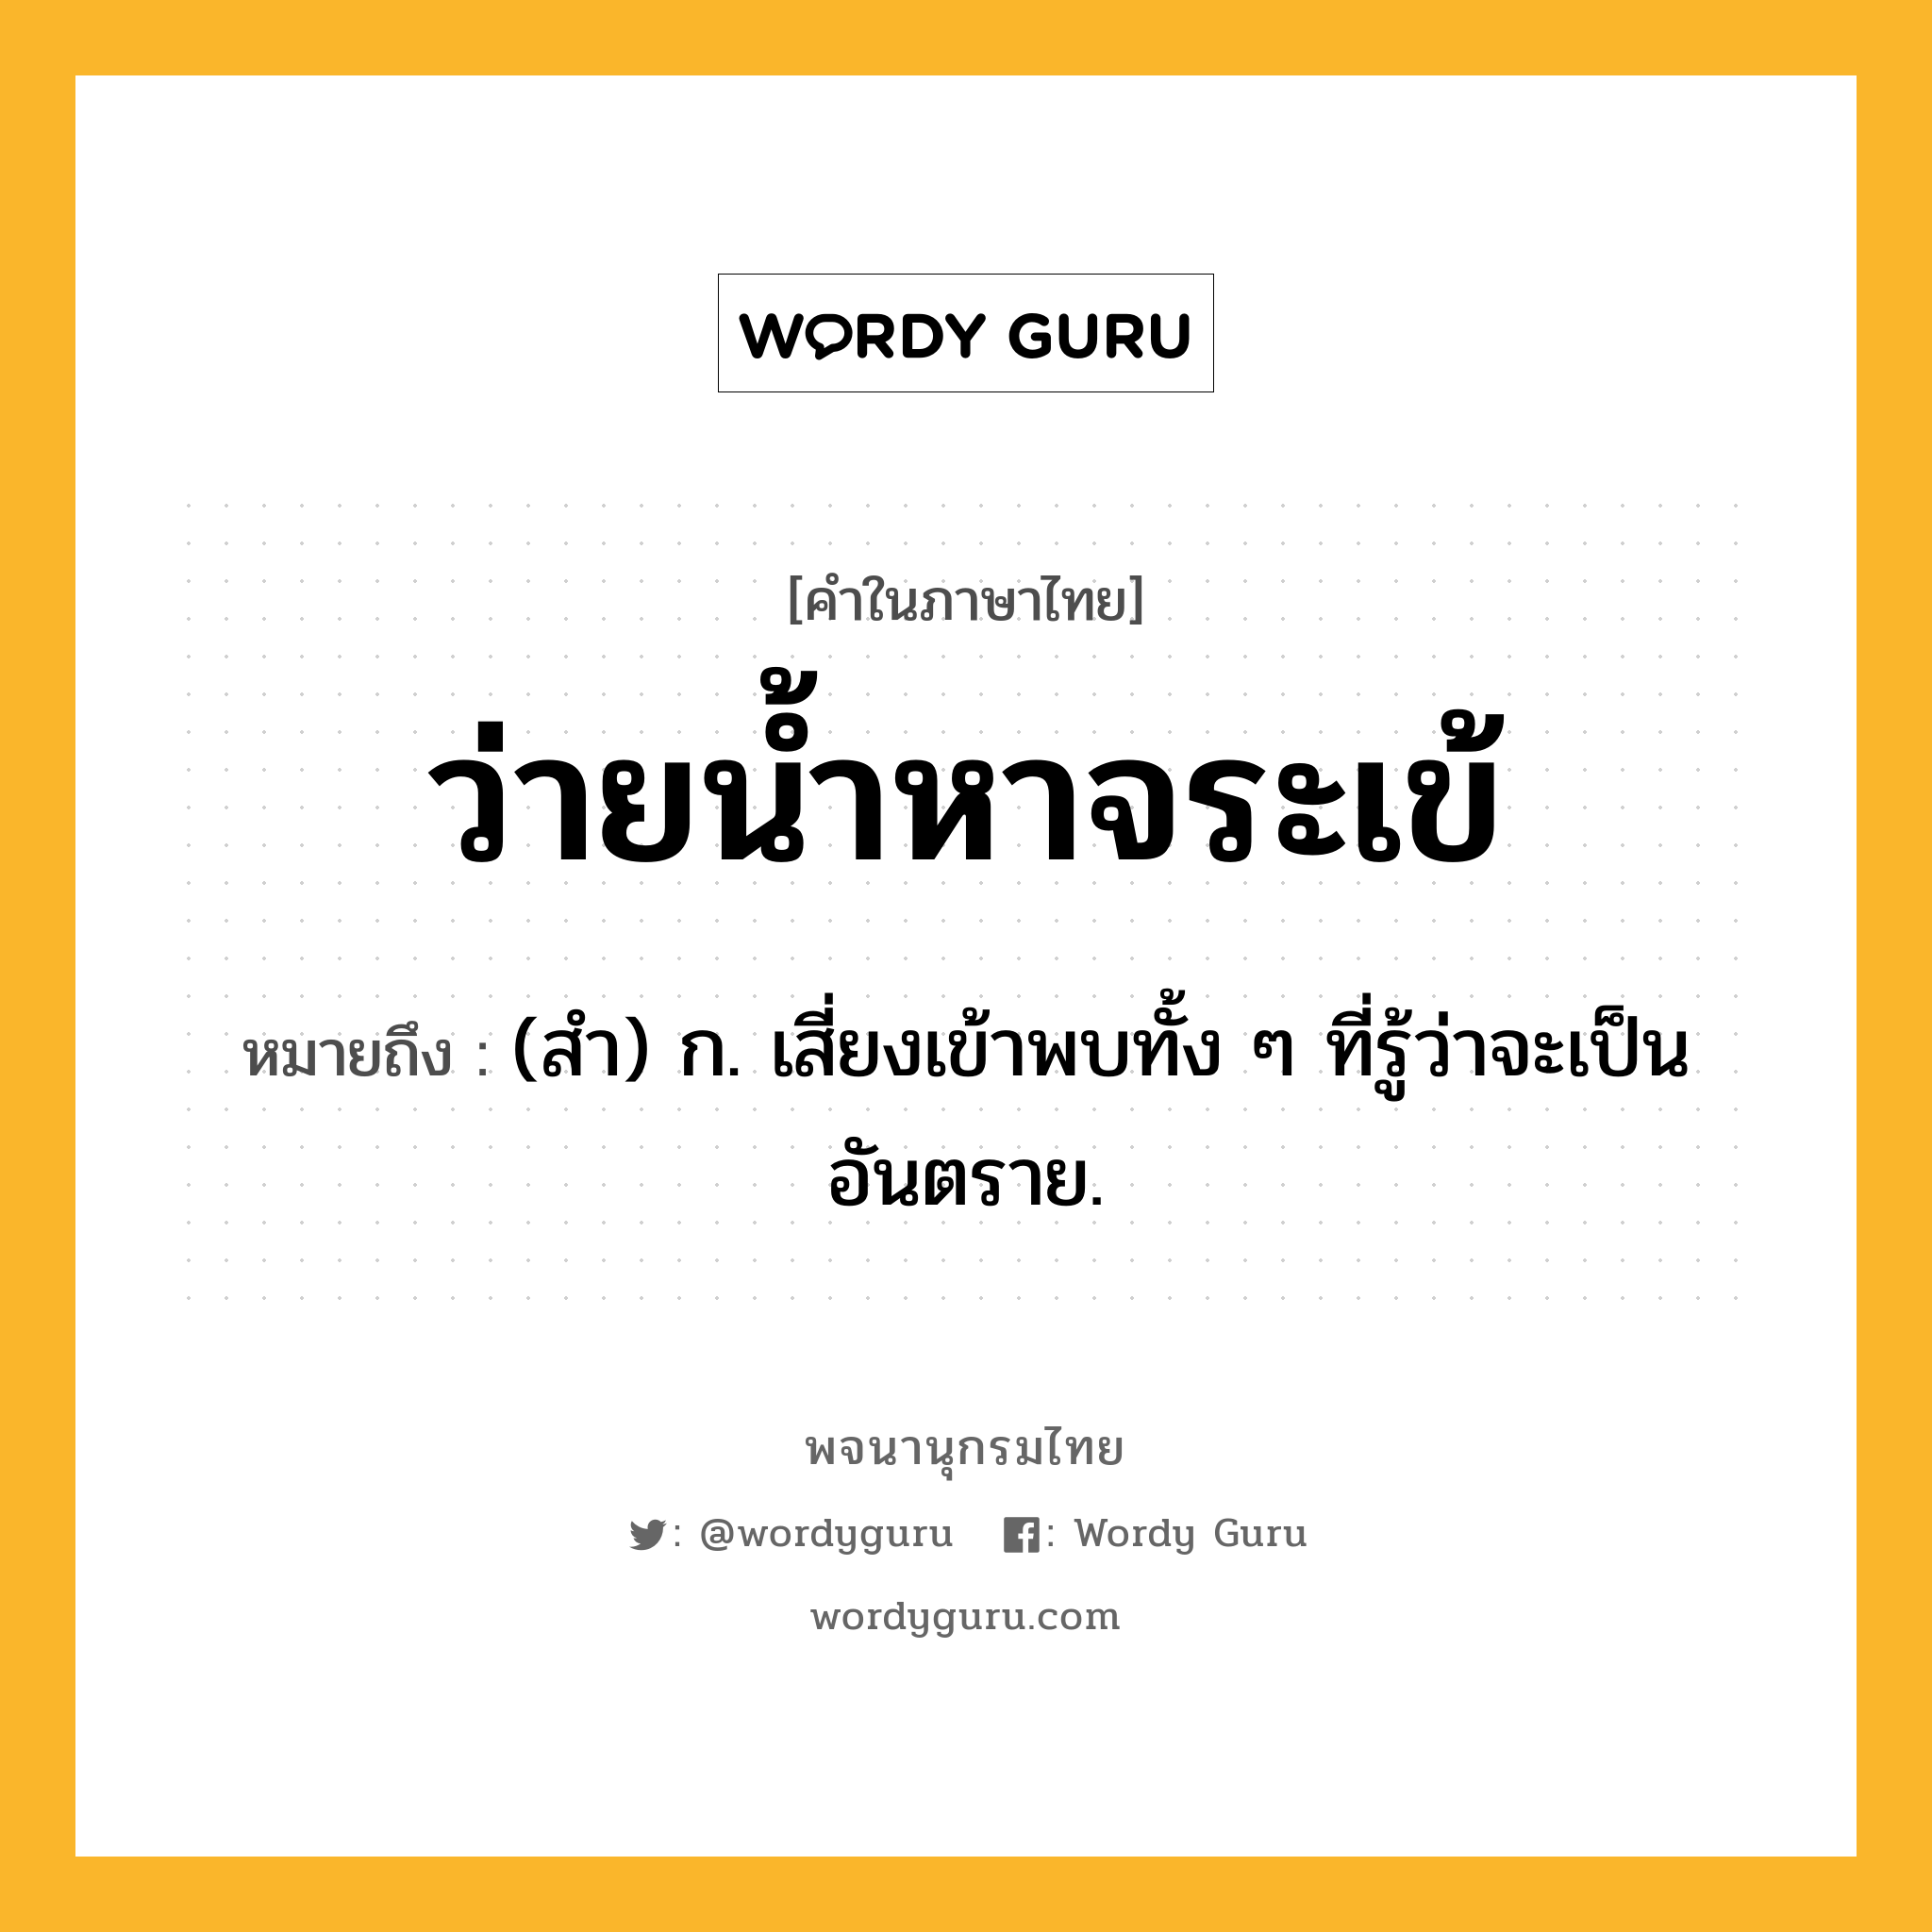 ว่ายน้ำหาจระเข้ หมายถึงอะไร?, คำในภาษาไทย ว่ายน้ำหาจระเข้ หมายถึง (สํา) ก. เสี่ยงเข้าพบทั้ง ๆ ที่รู้ว่าจะเป็นอันตราย.